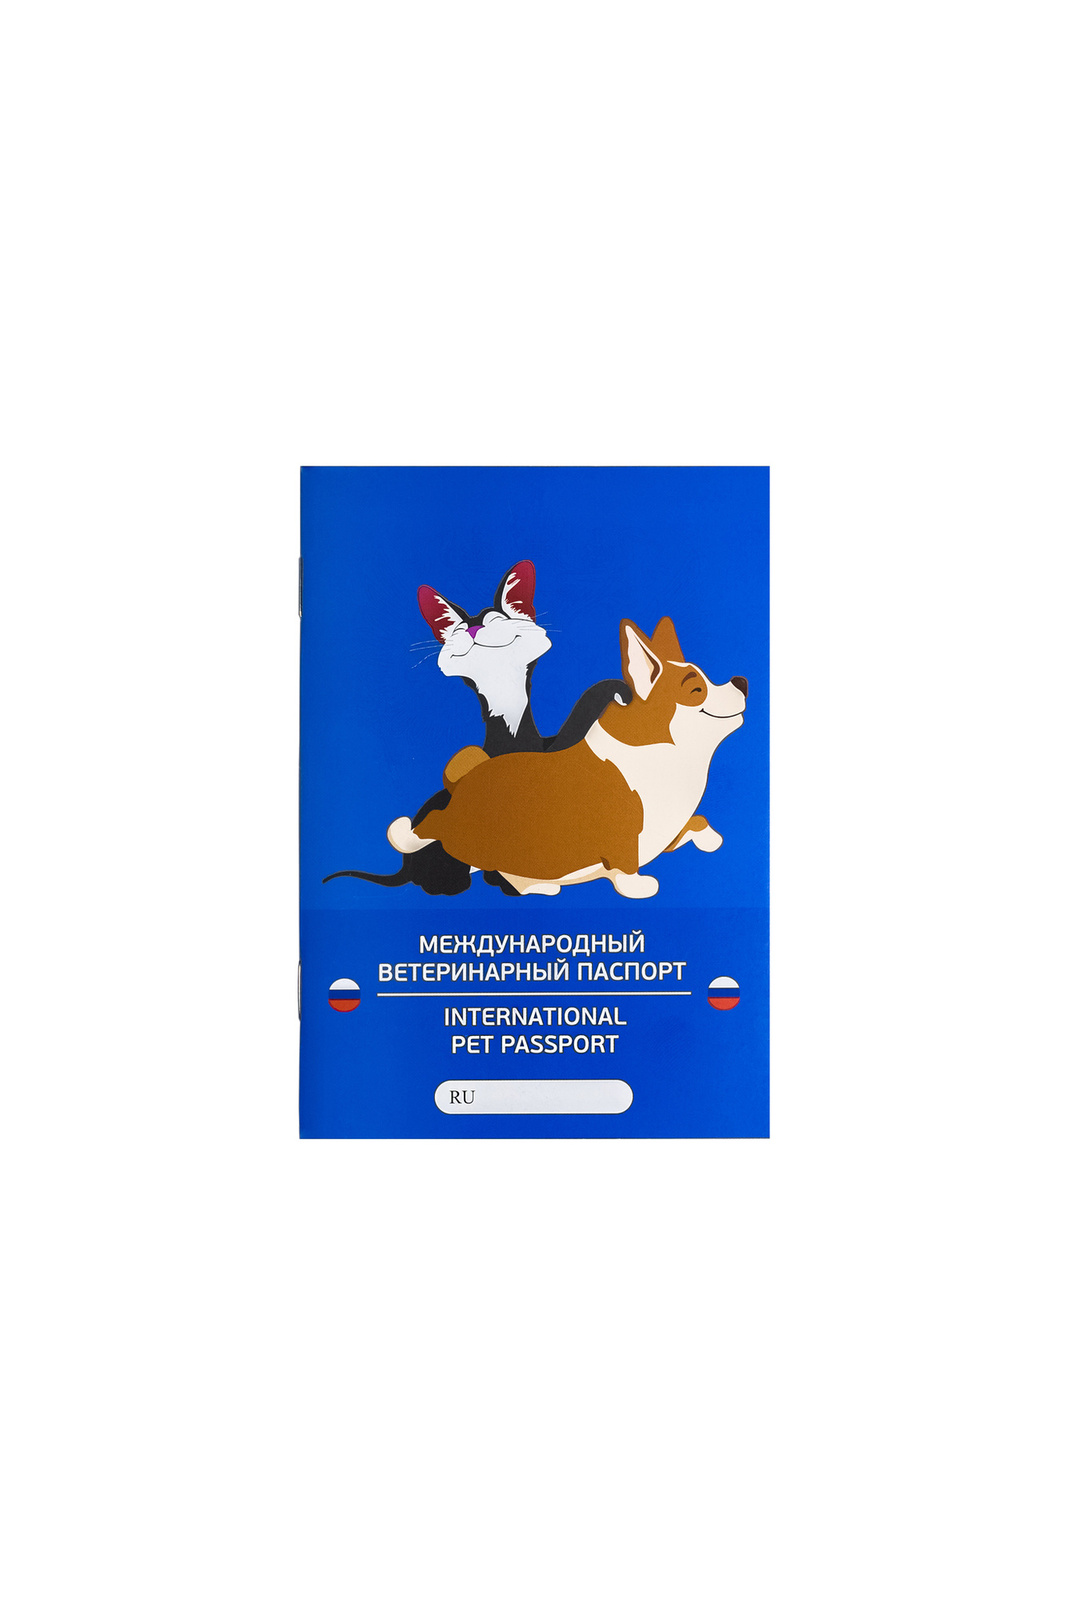 VETЗАБОТА VETЗАБОТА паспорт ветеринарный А6, 28 листов, обложка с ламинацией матовой (10 г) обложка на ветеринарный паспорт международный ветеринарный паспорт пвх